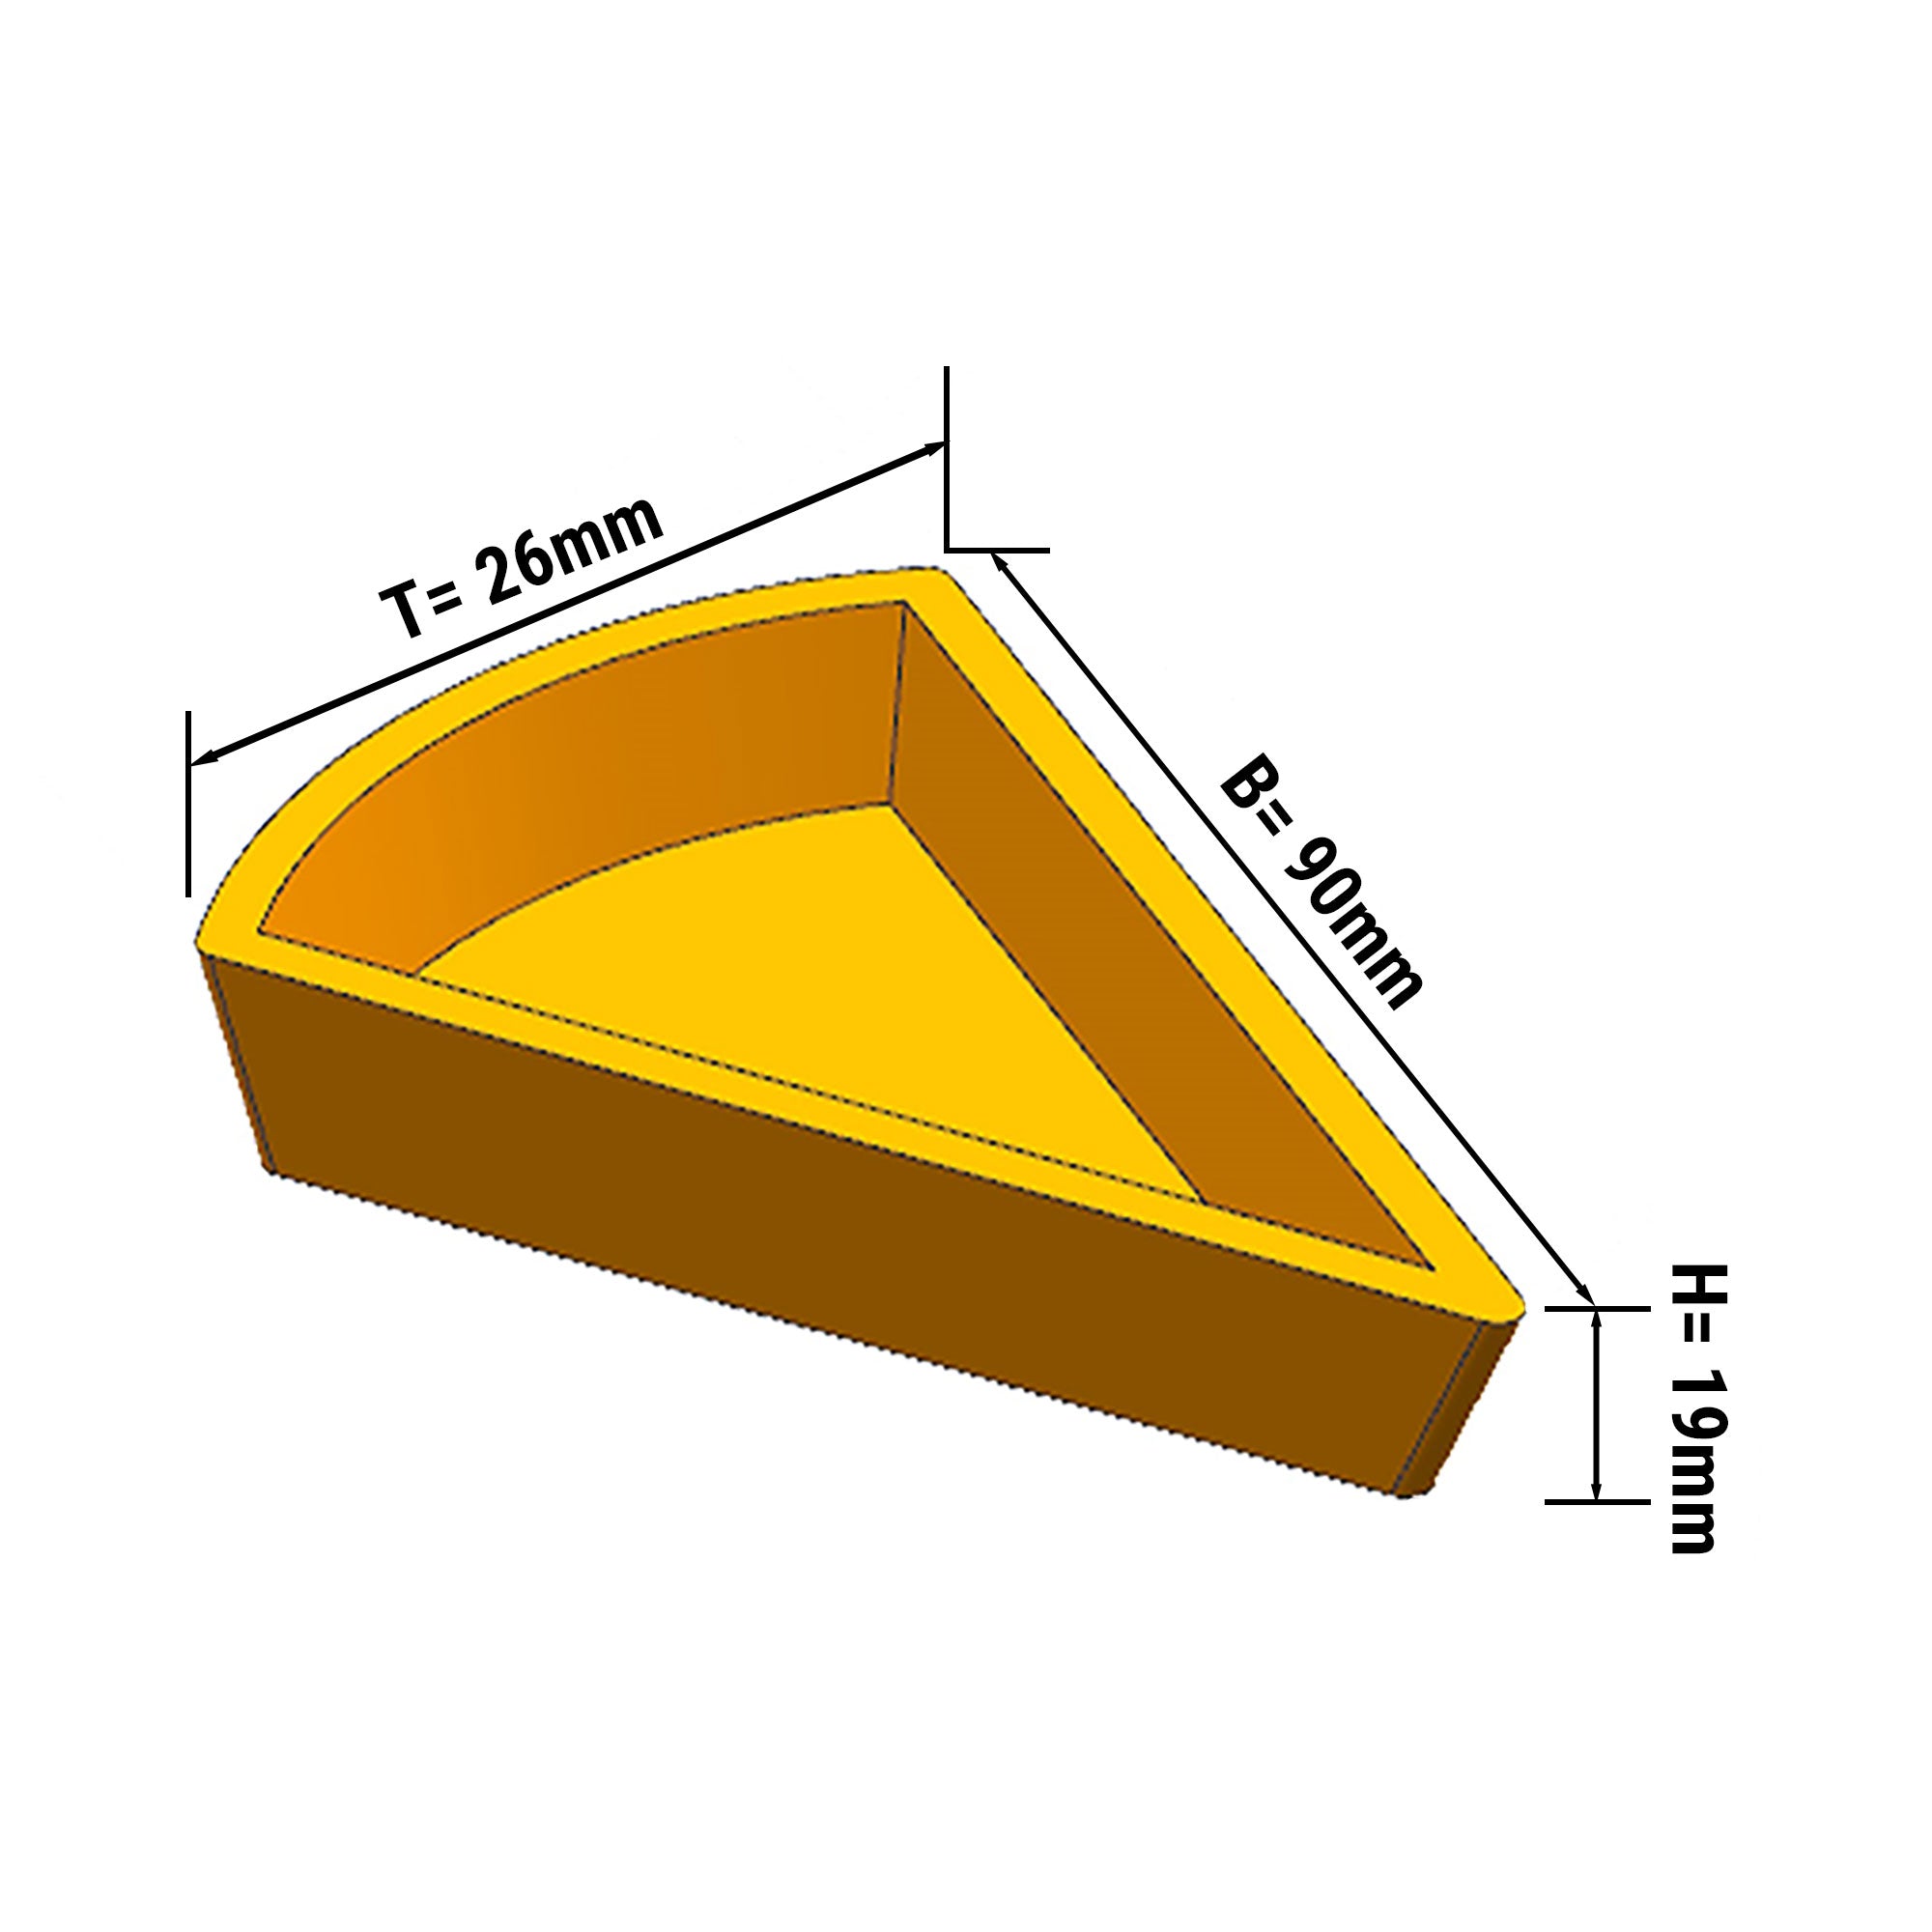 Tallerken for Tartelettmaskin - Form: Kakestykke - topp: 110 x 60 mm, Bunn: 100 x 48 mm / Høyde: 20 mm